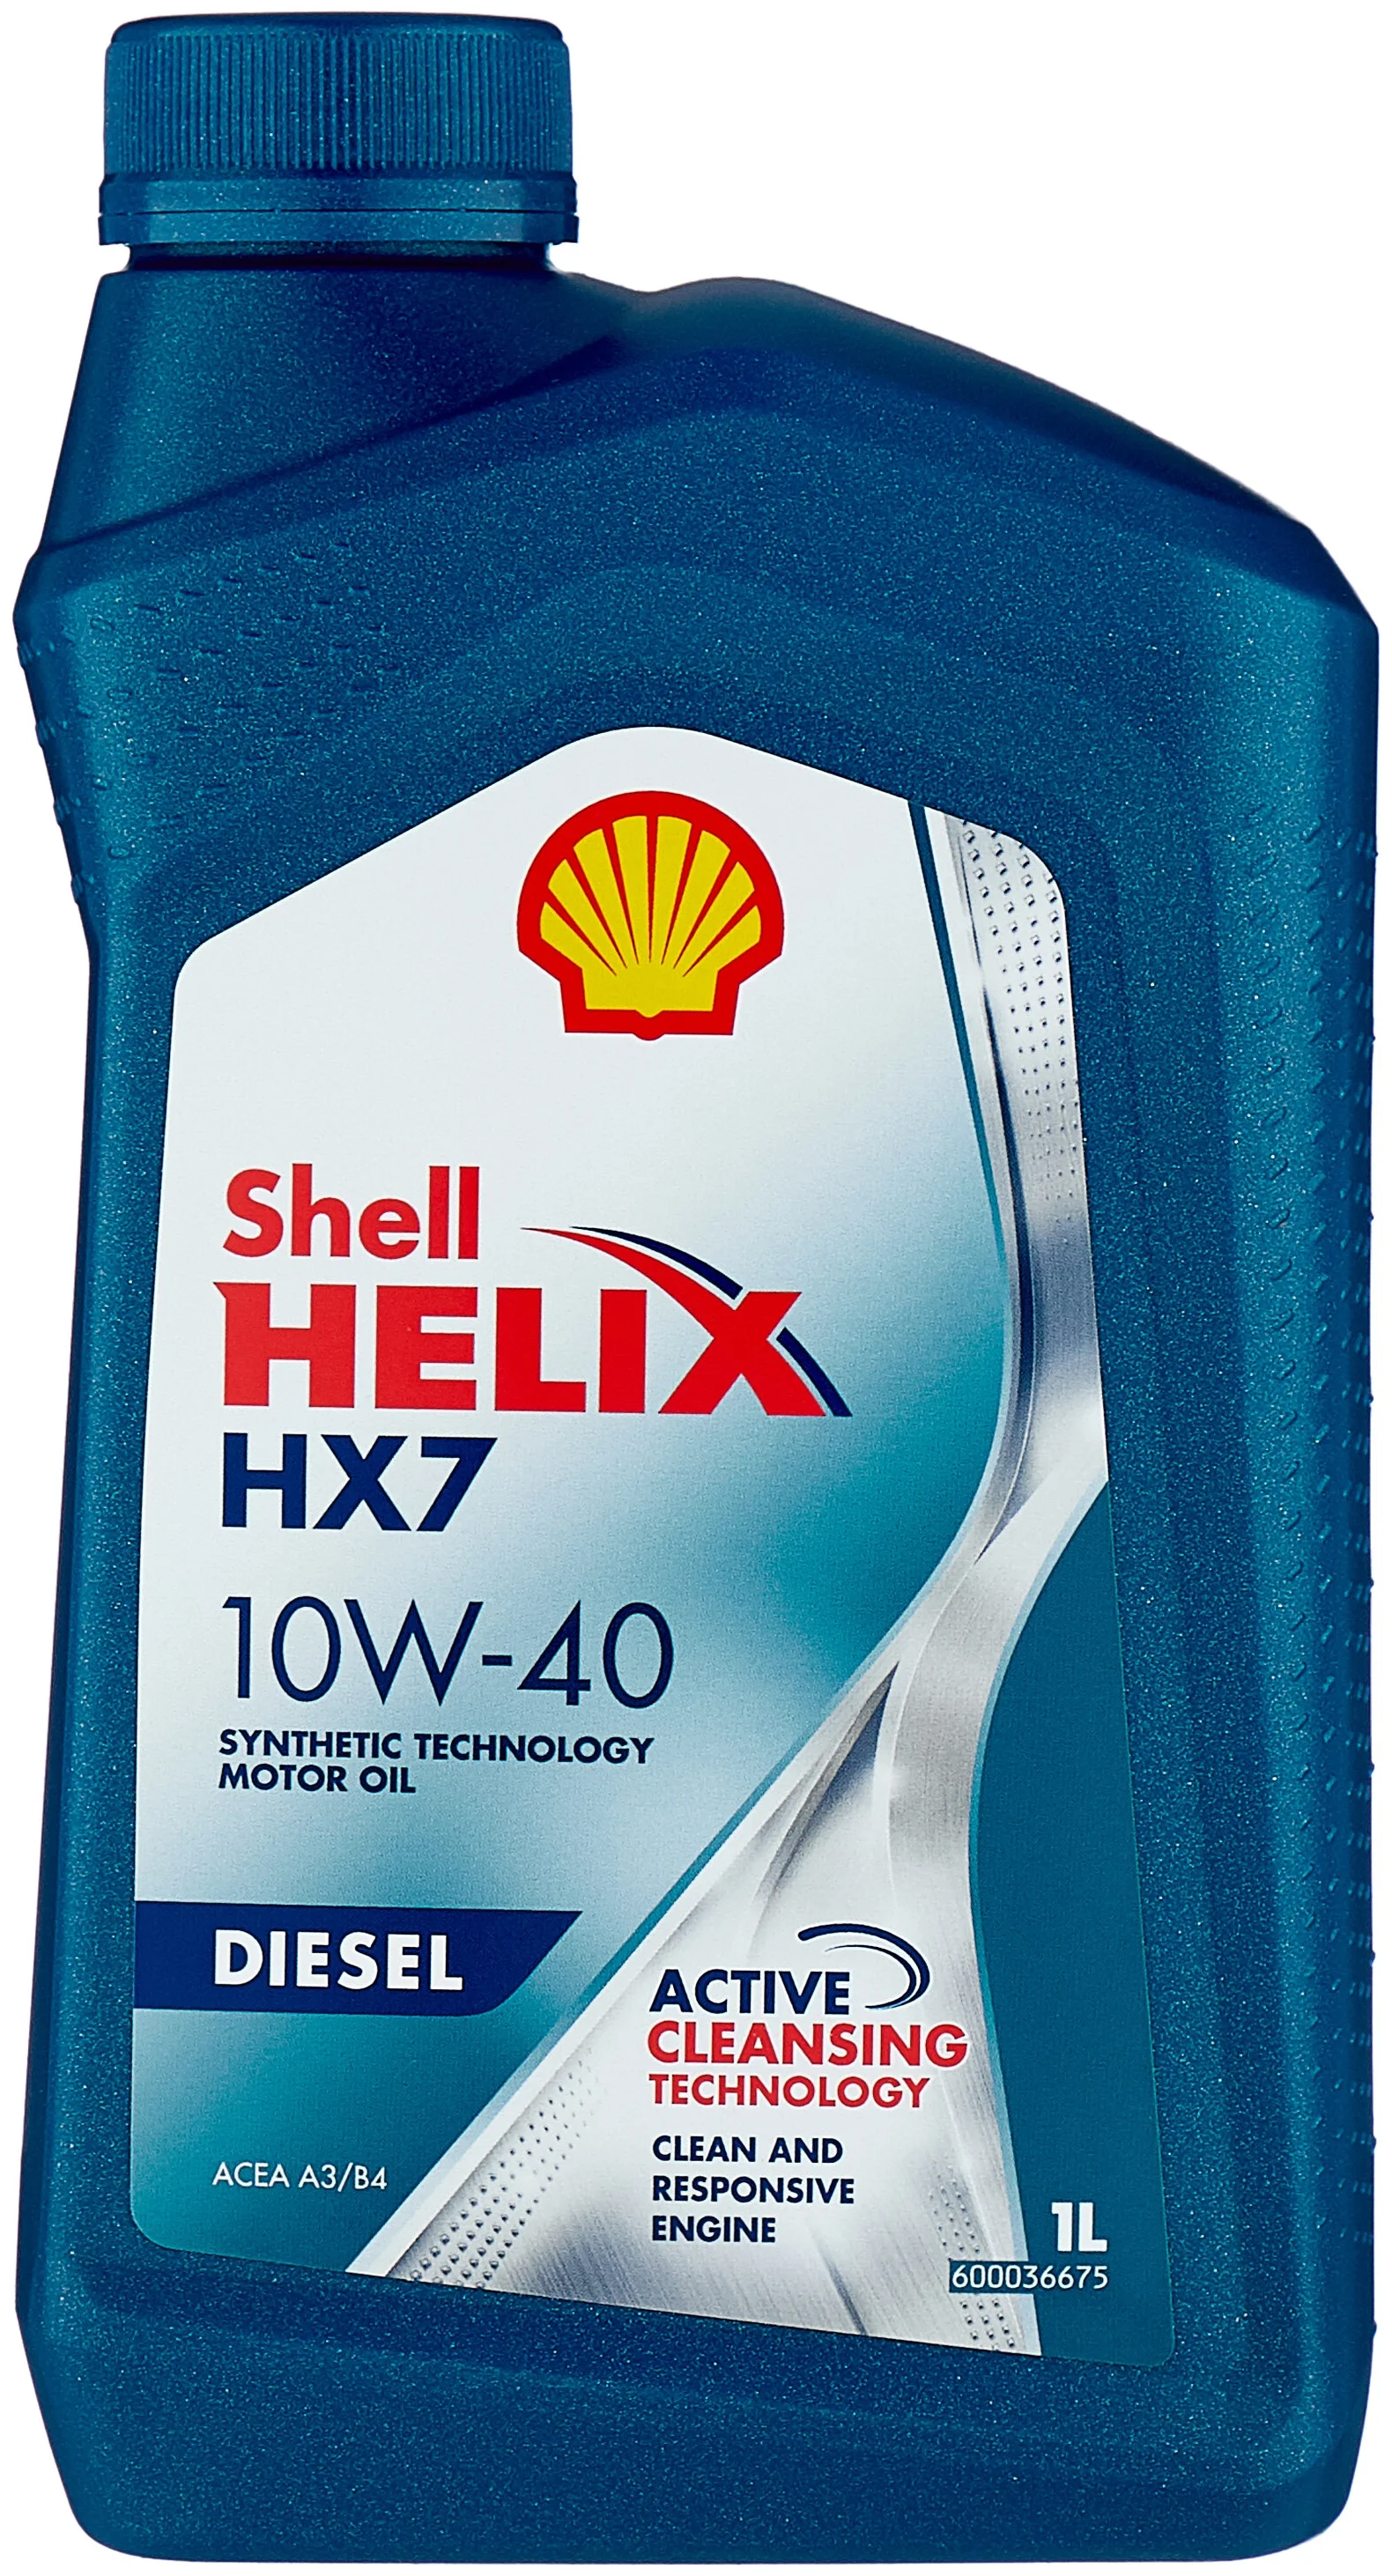 SHELL Helix HX7 Diesel 10W-40 - класс вязкости: 10W-40